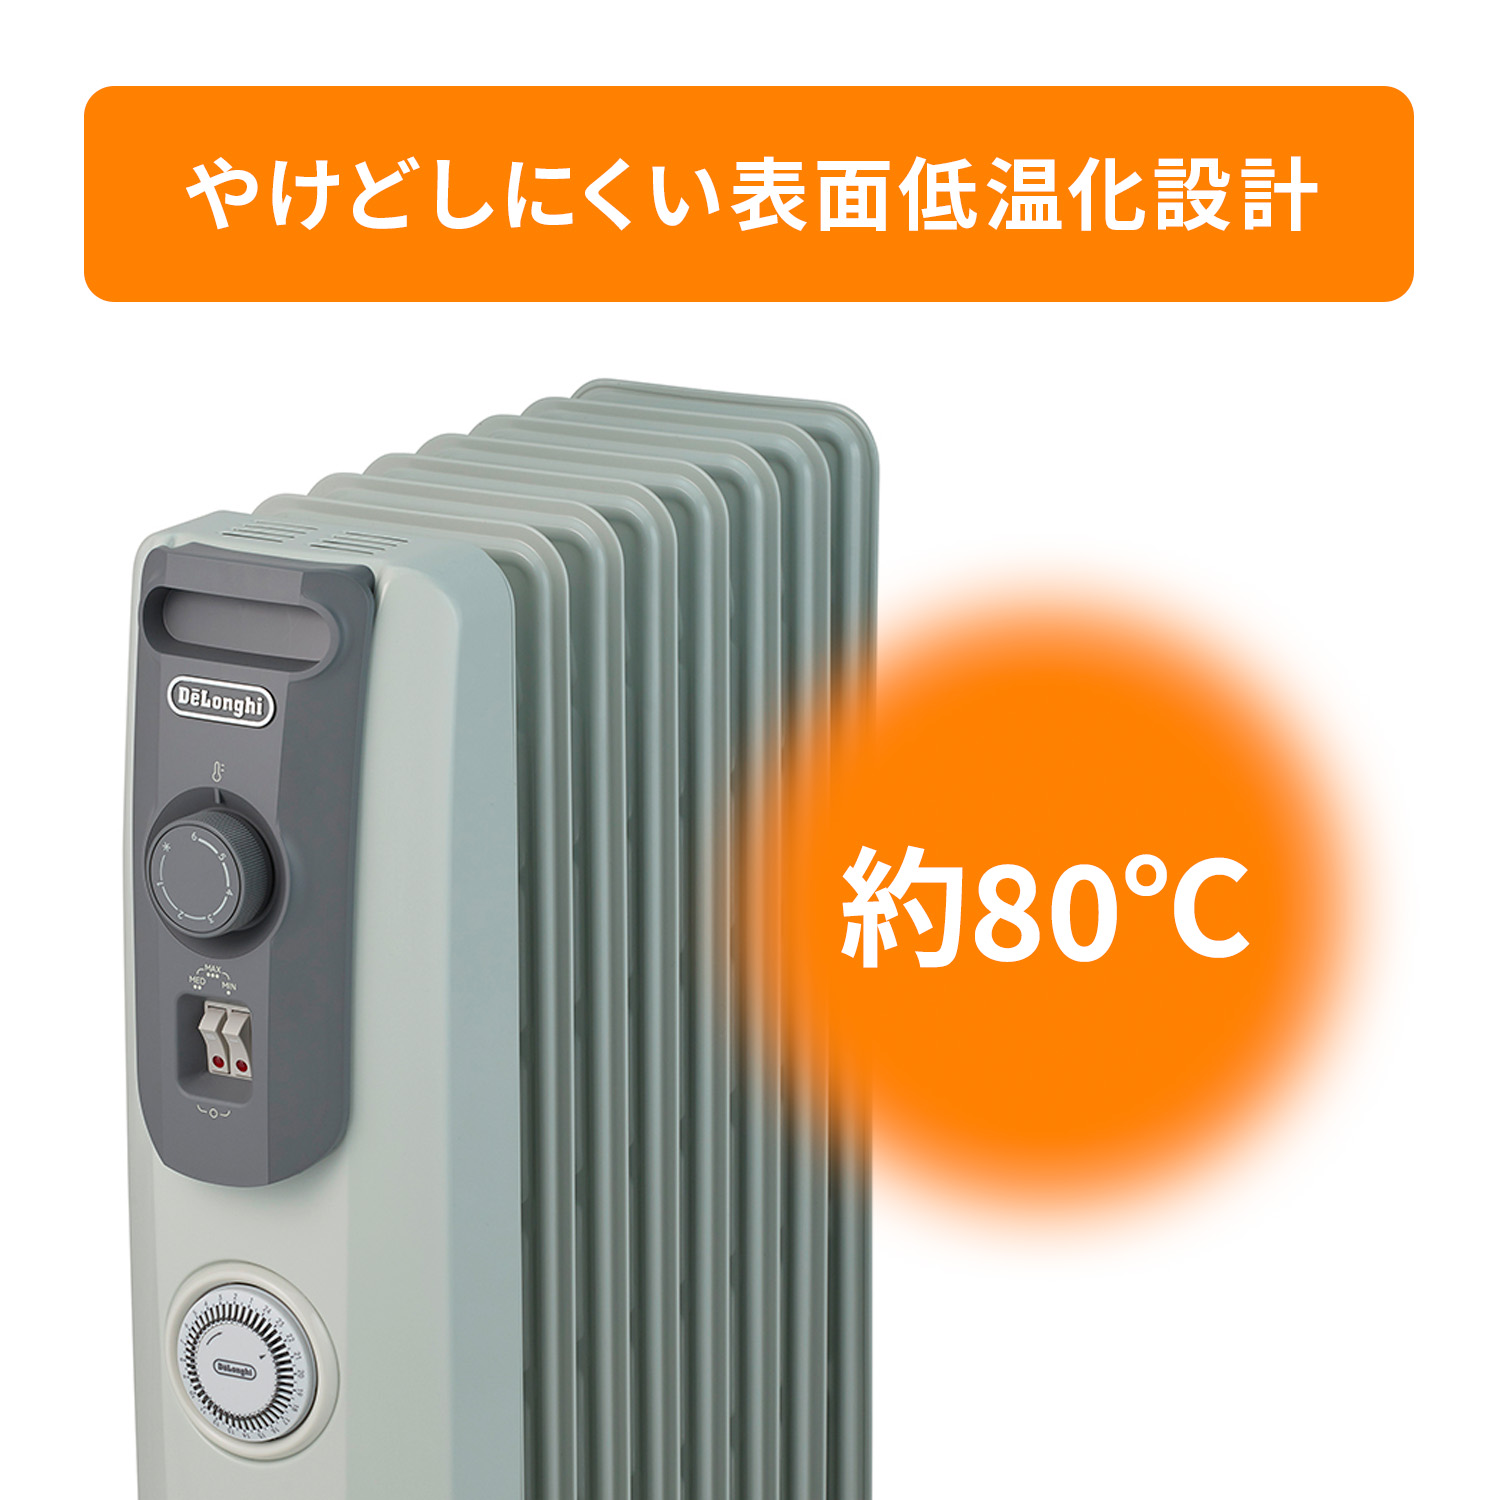 デロンギ オイルヒーター RHJ1050812-SG |ゼロ風暖房 デロンギ ヒーター